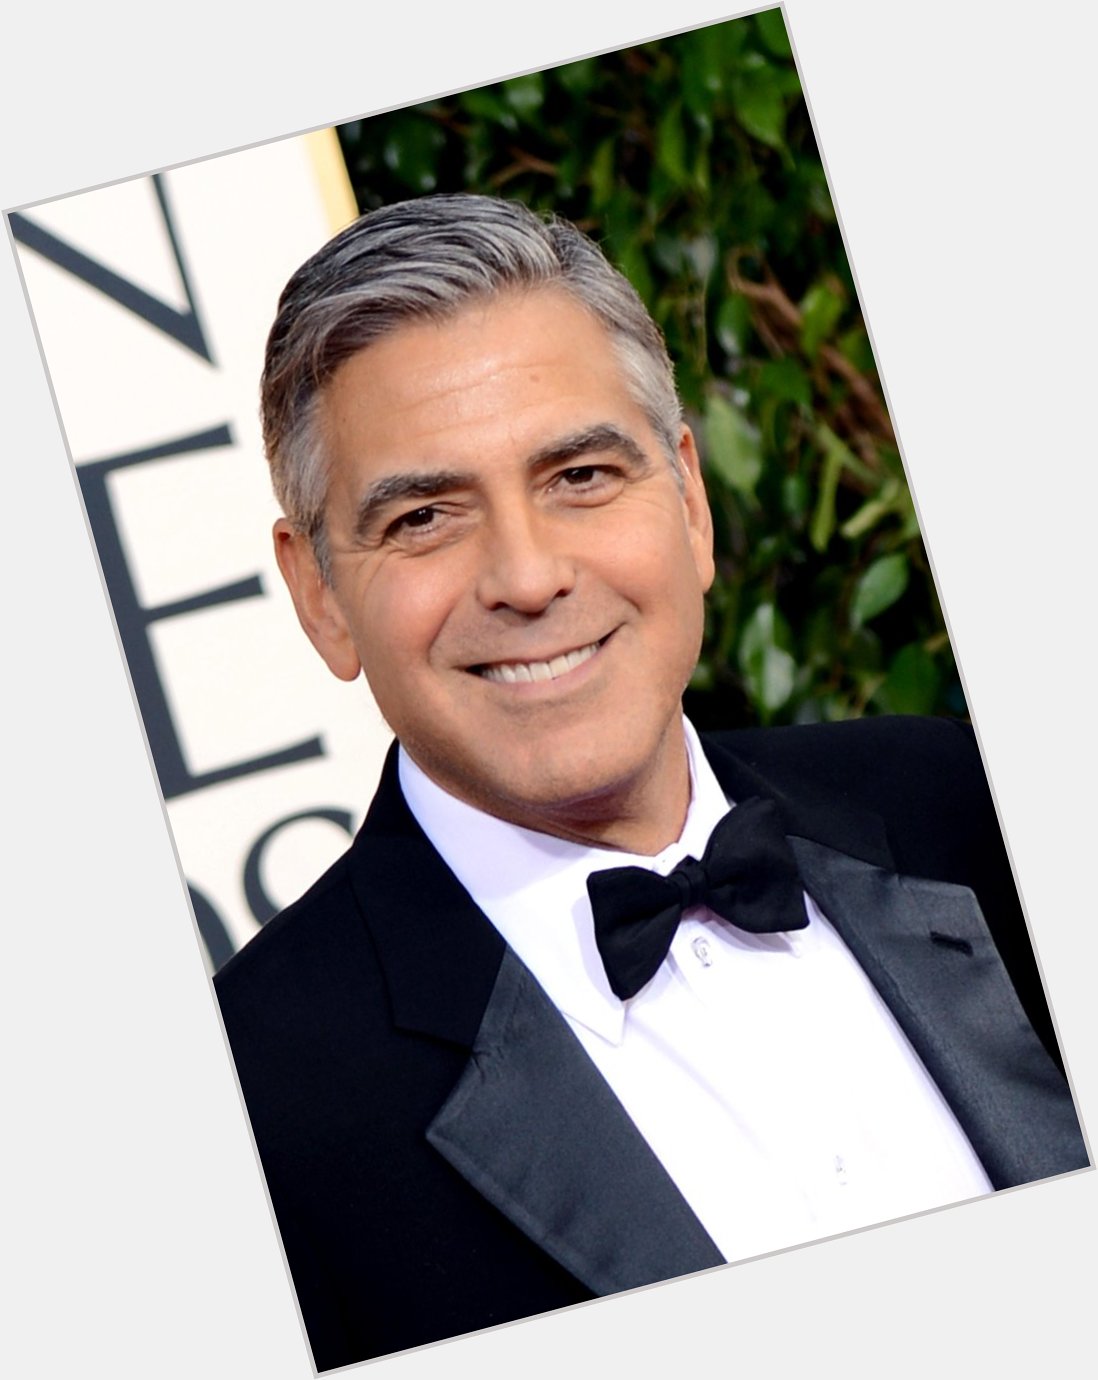 TODAYshow: Happy Birthday George Clooney! 